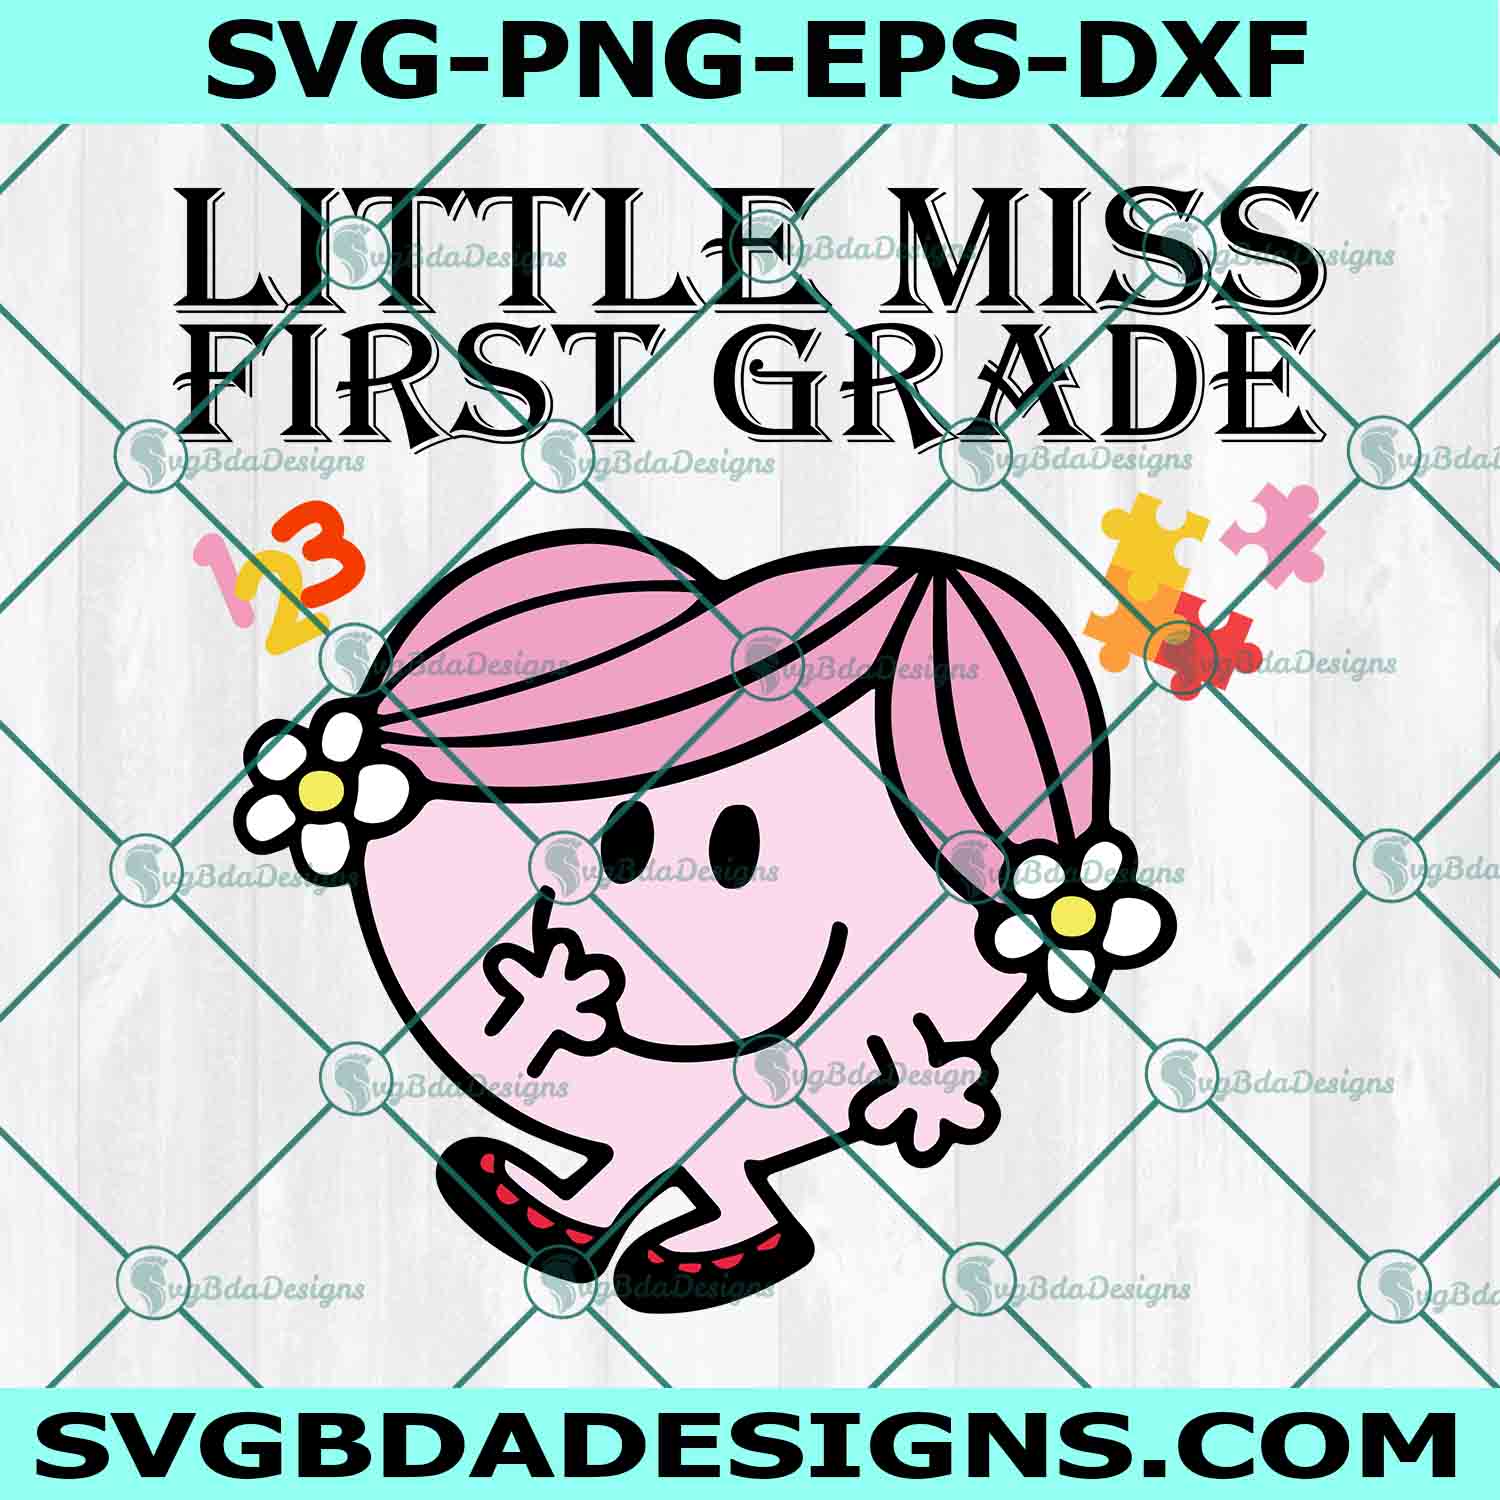 Little Miss First Grade Svg, Little Miss Back to School Svg, Little Miss Svg, First Grade Svg, Back to School Svg, Teacher Svg, File For Cricut